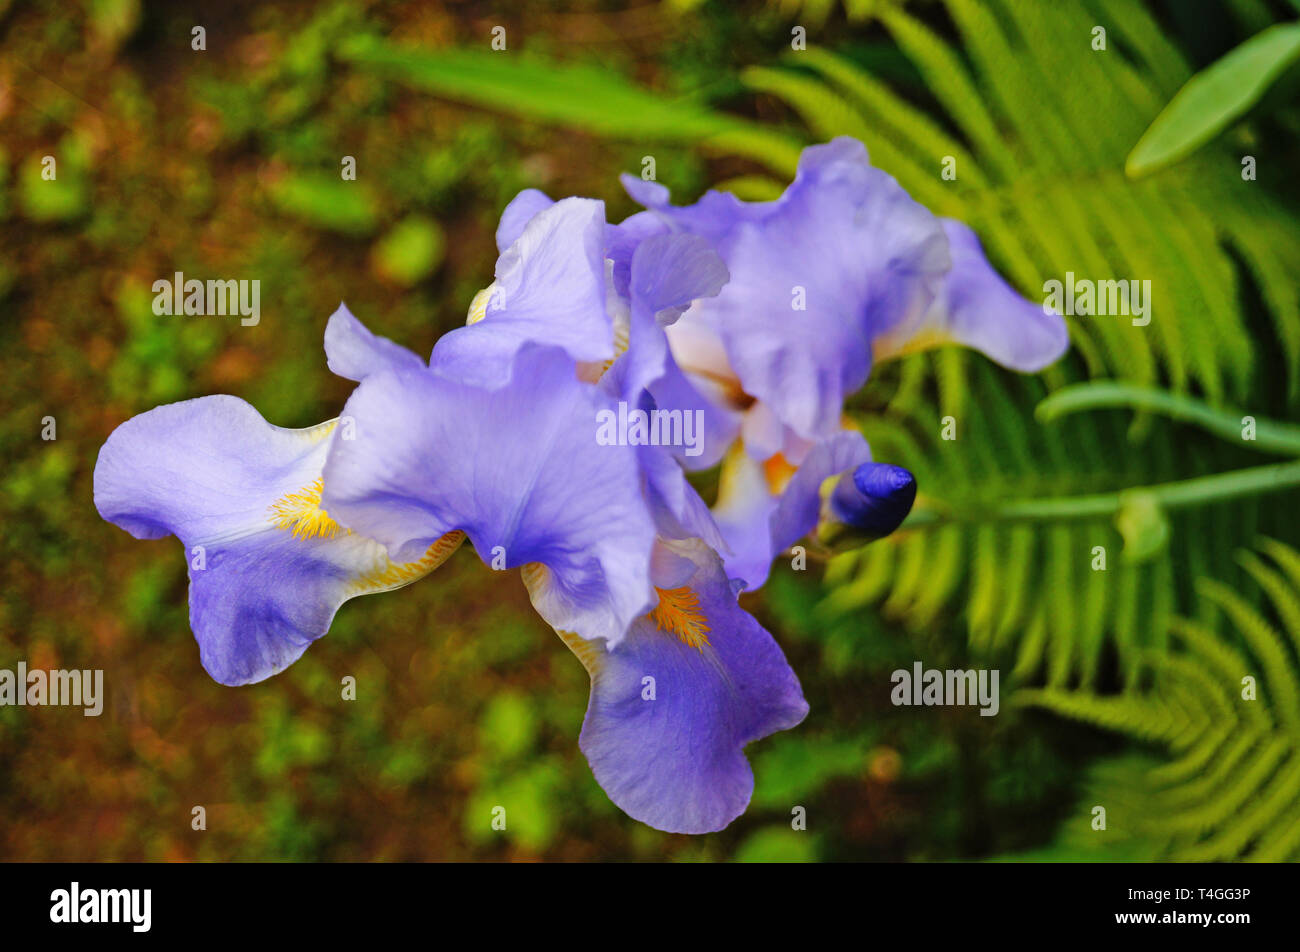 Iris Blume mit blauen und violetten zarte Blütenblätter auf einem Zweig mit grünen Blättern Stockfoto